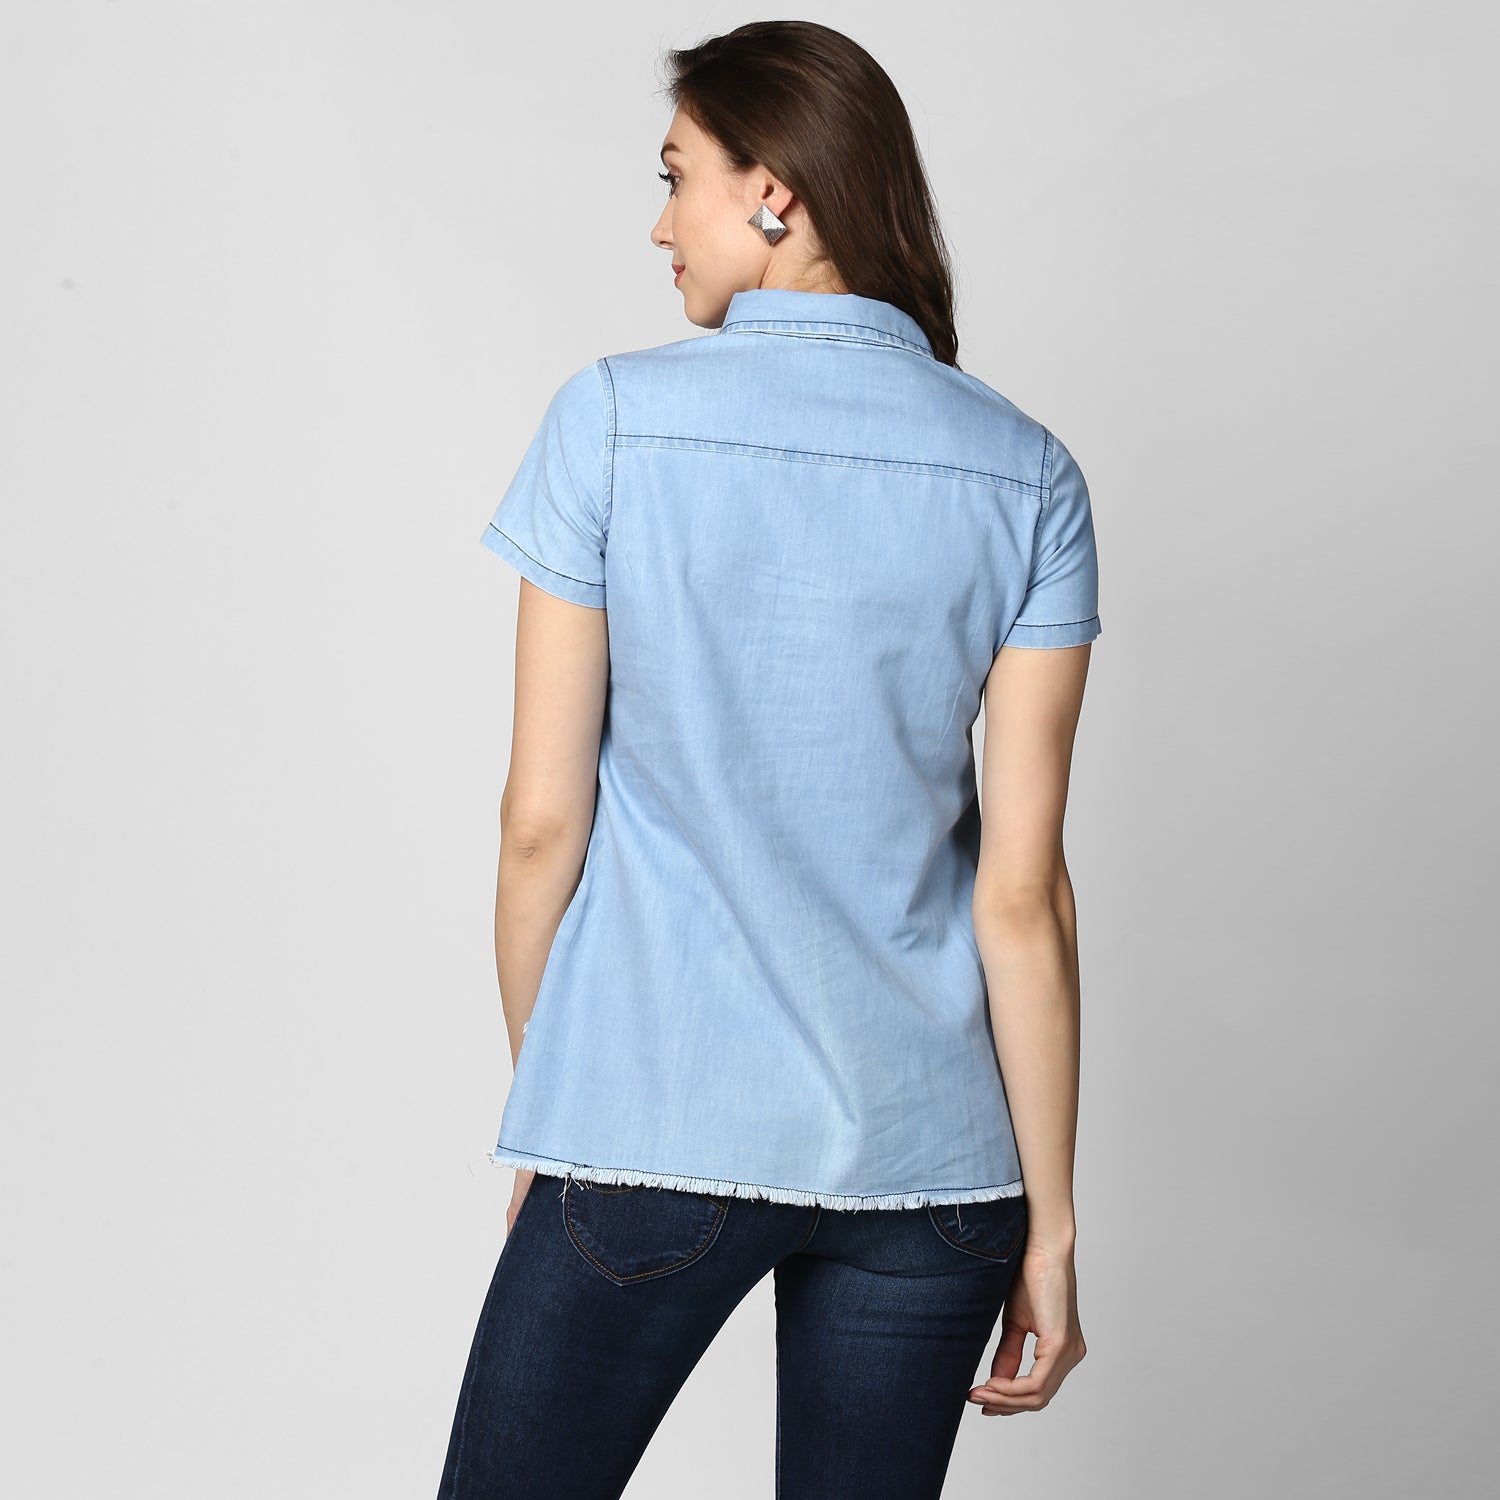 Women's Ice Blue Denim Peplum Top cum Shirt - StyleStone